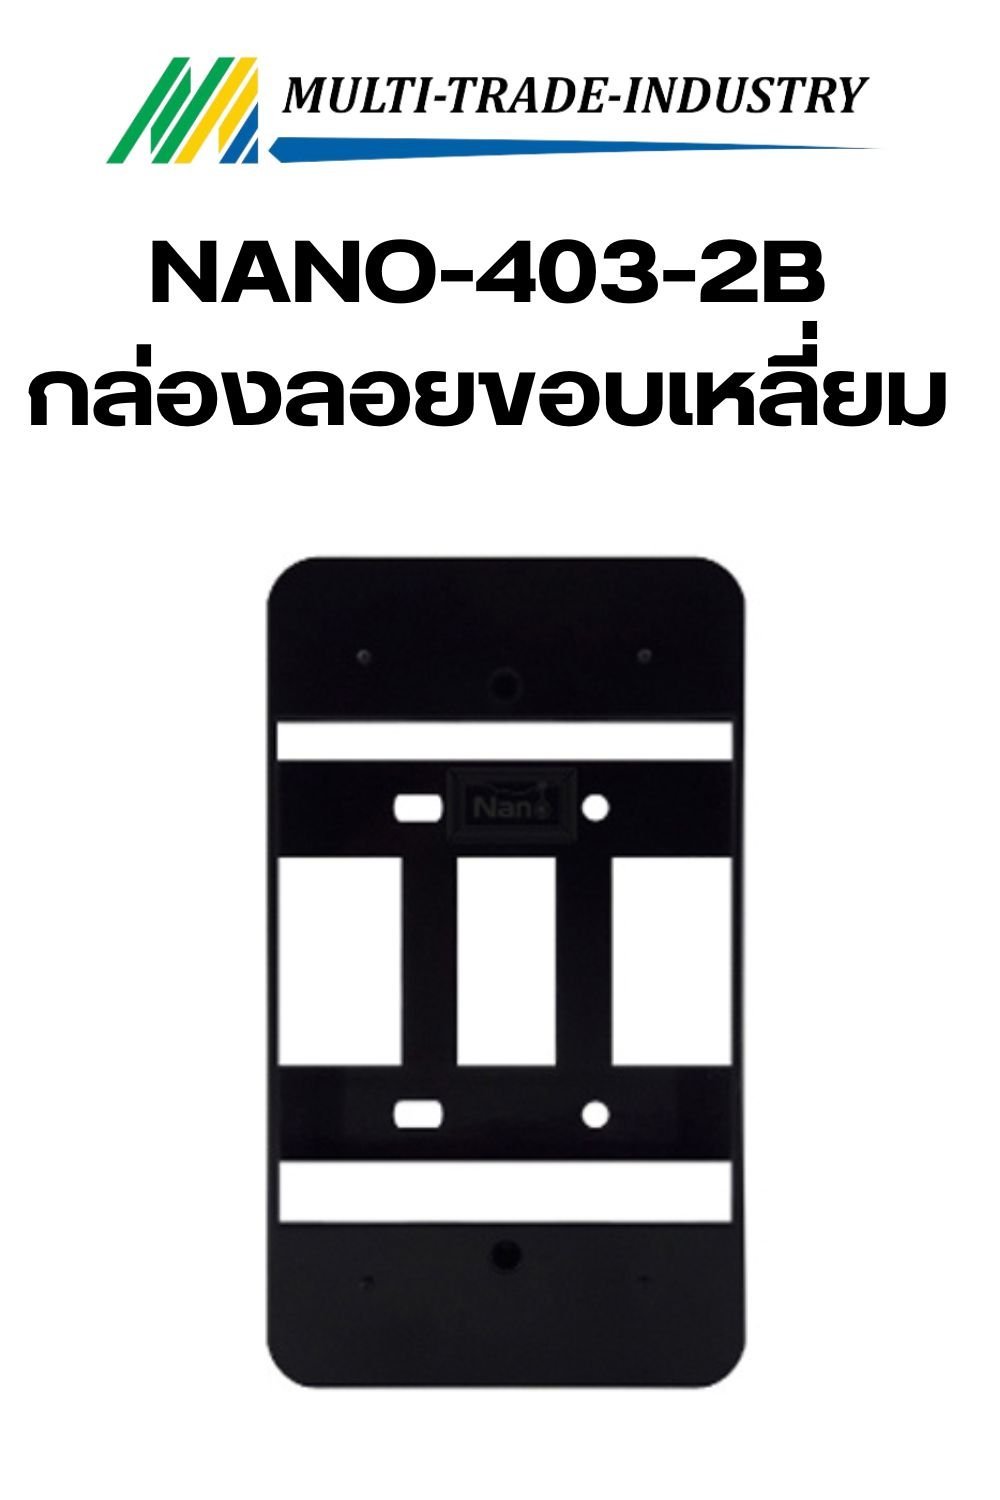 Nano 403-2B กล่องลอยขอบมน